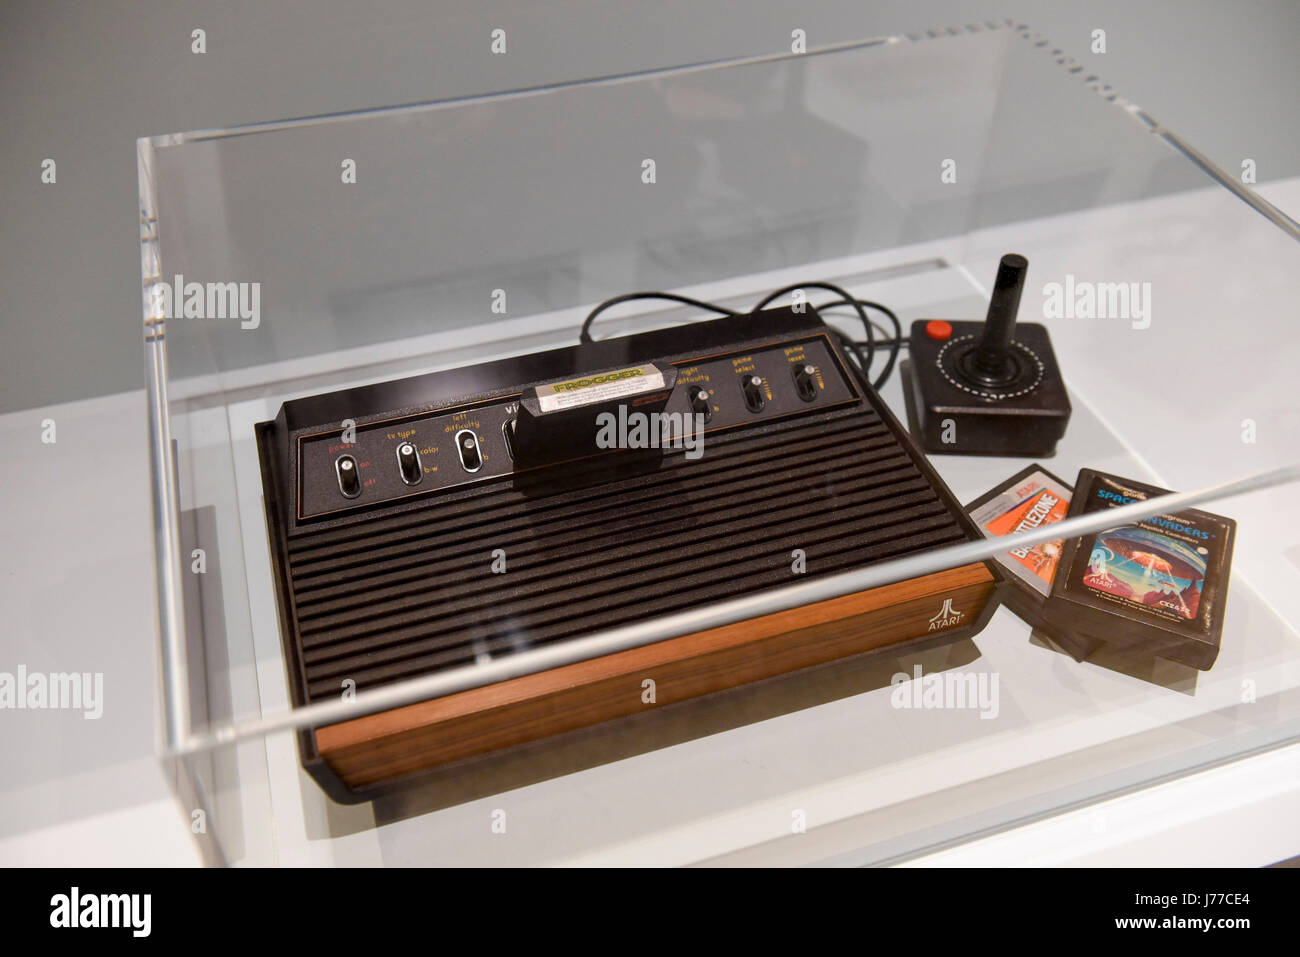 Londra, Regno Unito. 23 Maggio, 2017. Un Atari 2600 CX2600-A, una console video progettato da Ted Dabney e Nolan Bushnell, 1980, considerato il padrino di sistemi home video. Premere Anteprima di "California Progettazione di liberta', una mostra presso il Museo del Design che celebra la storia di prodotti progettati in California a partire dagli anni sessanta al giorno corrente. La mostra va dal 24 maggio al 15 ottobre 2017. Credito: Stephen Chung/Alamy Live News Foto Stock